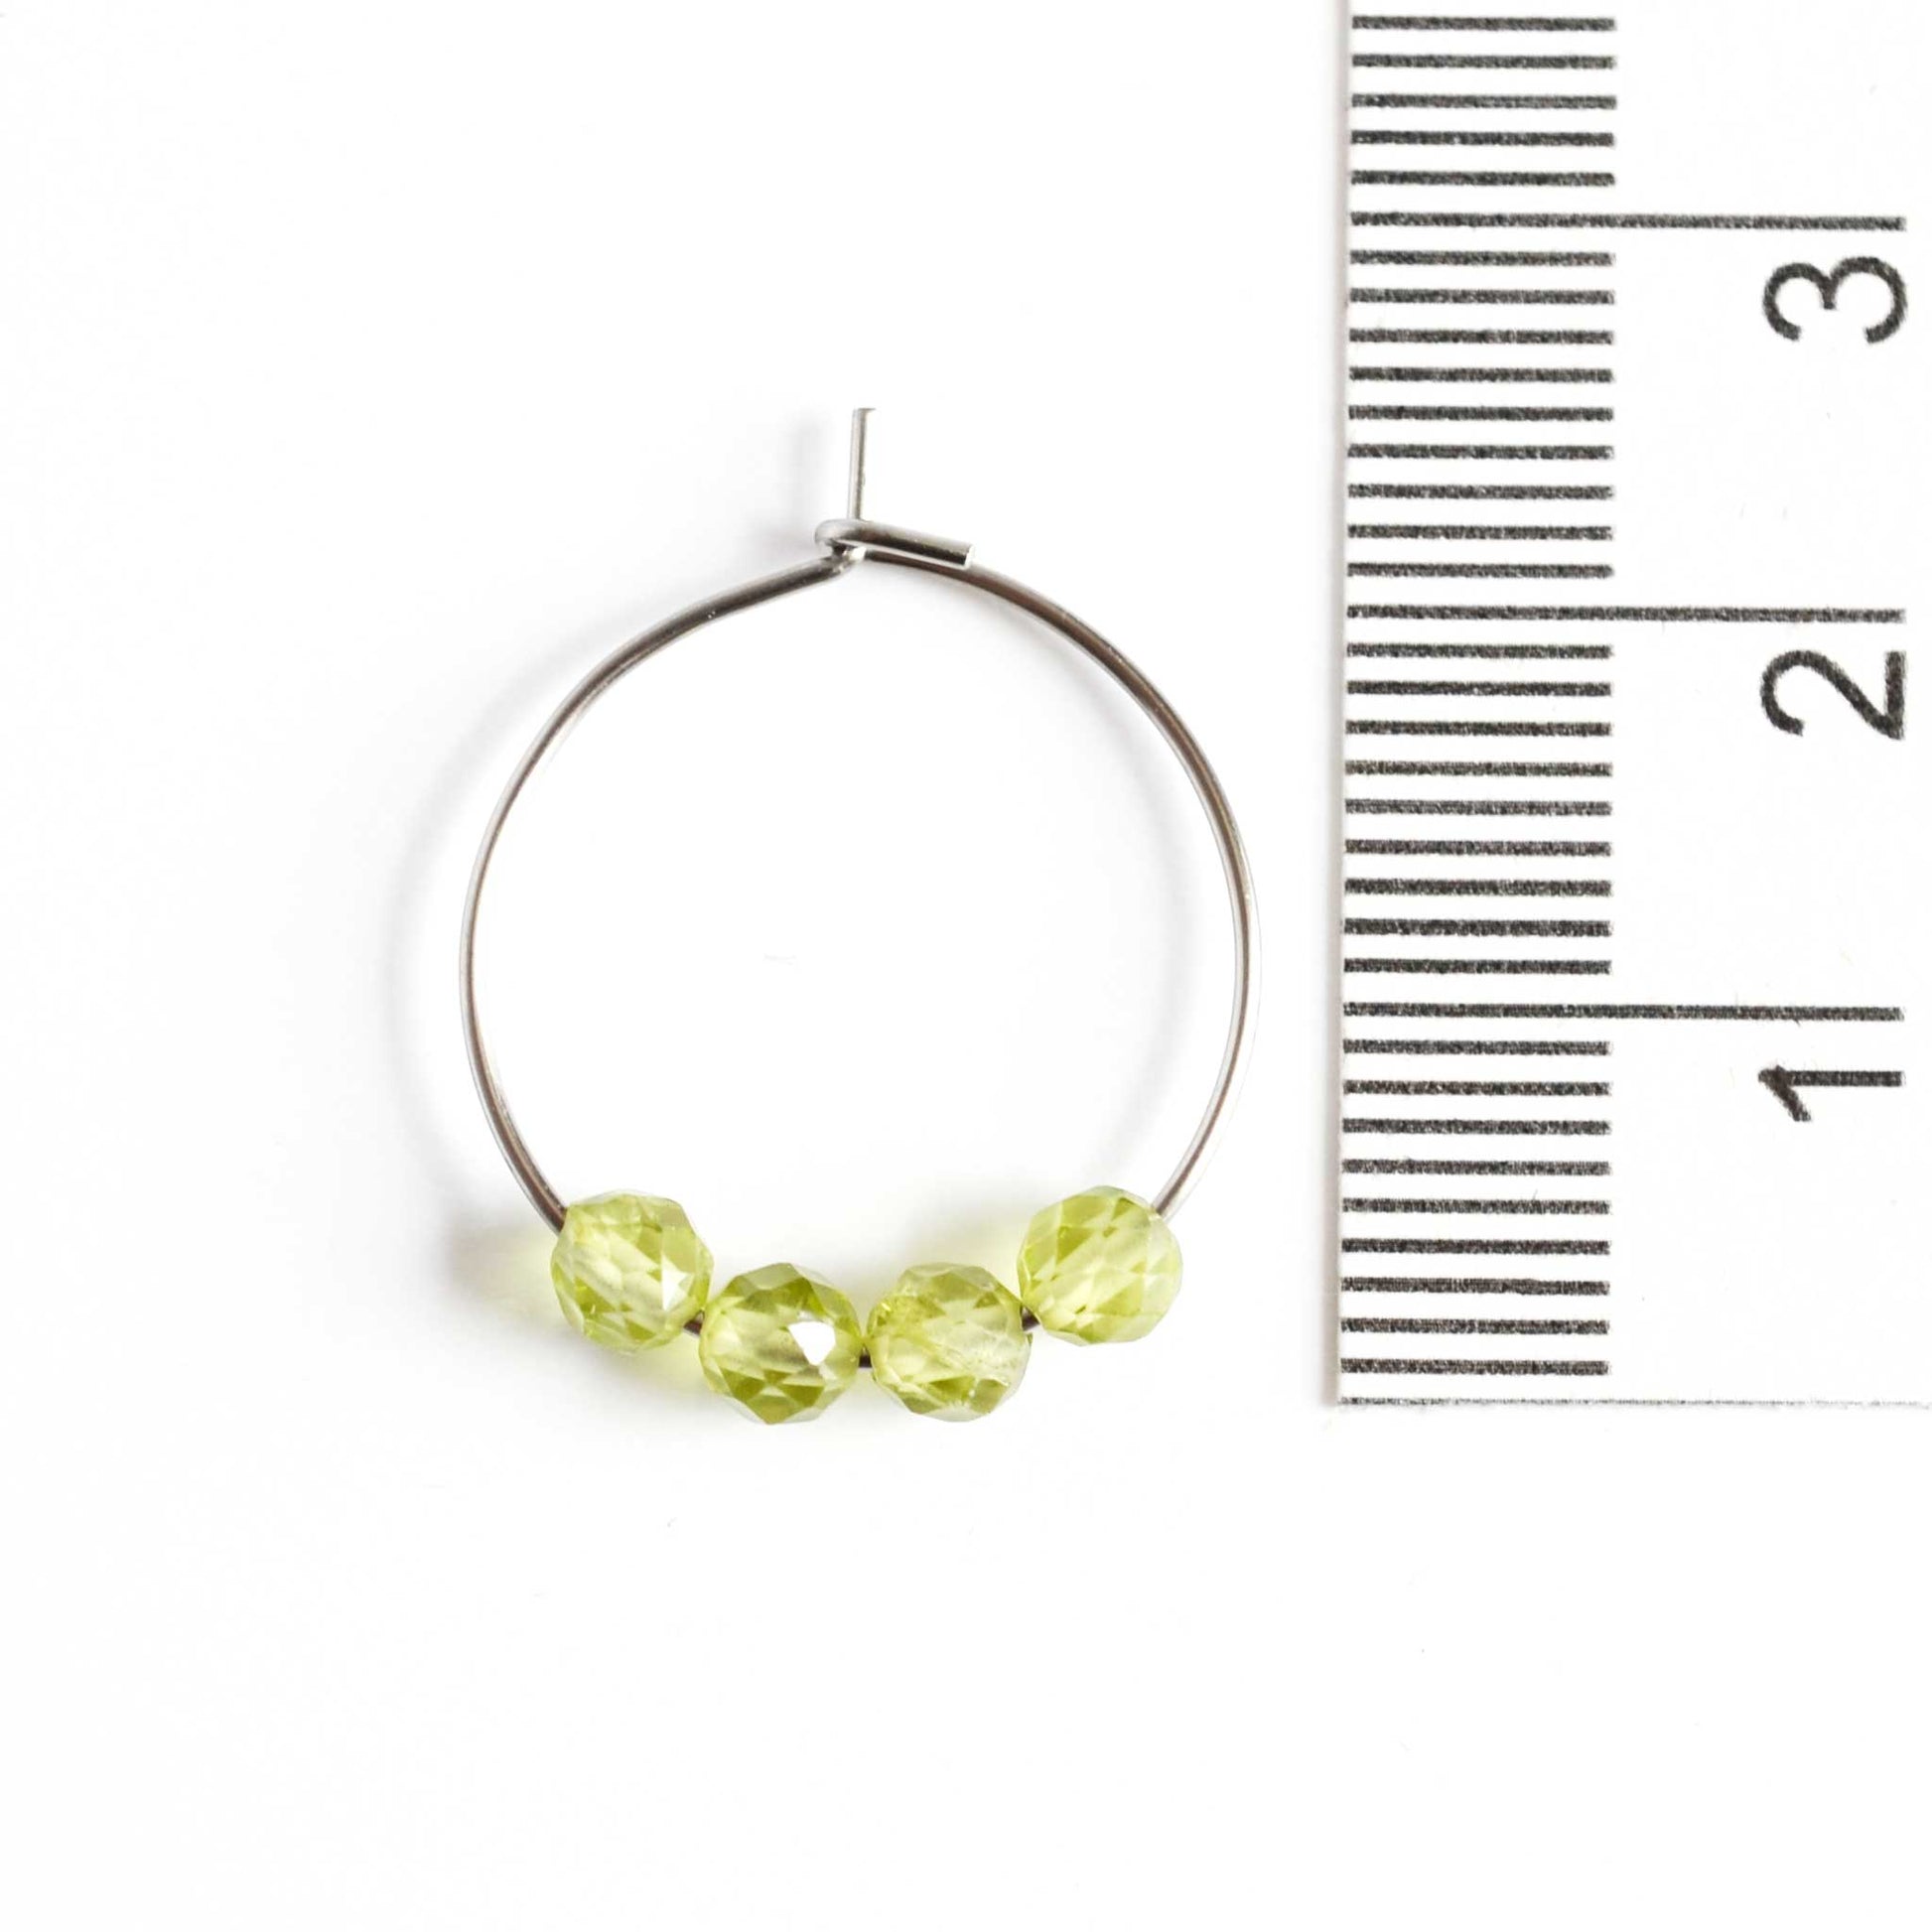 2cm diameter Peridot hoop earrings next to ruler